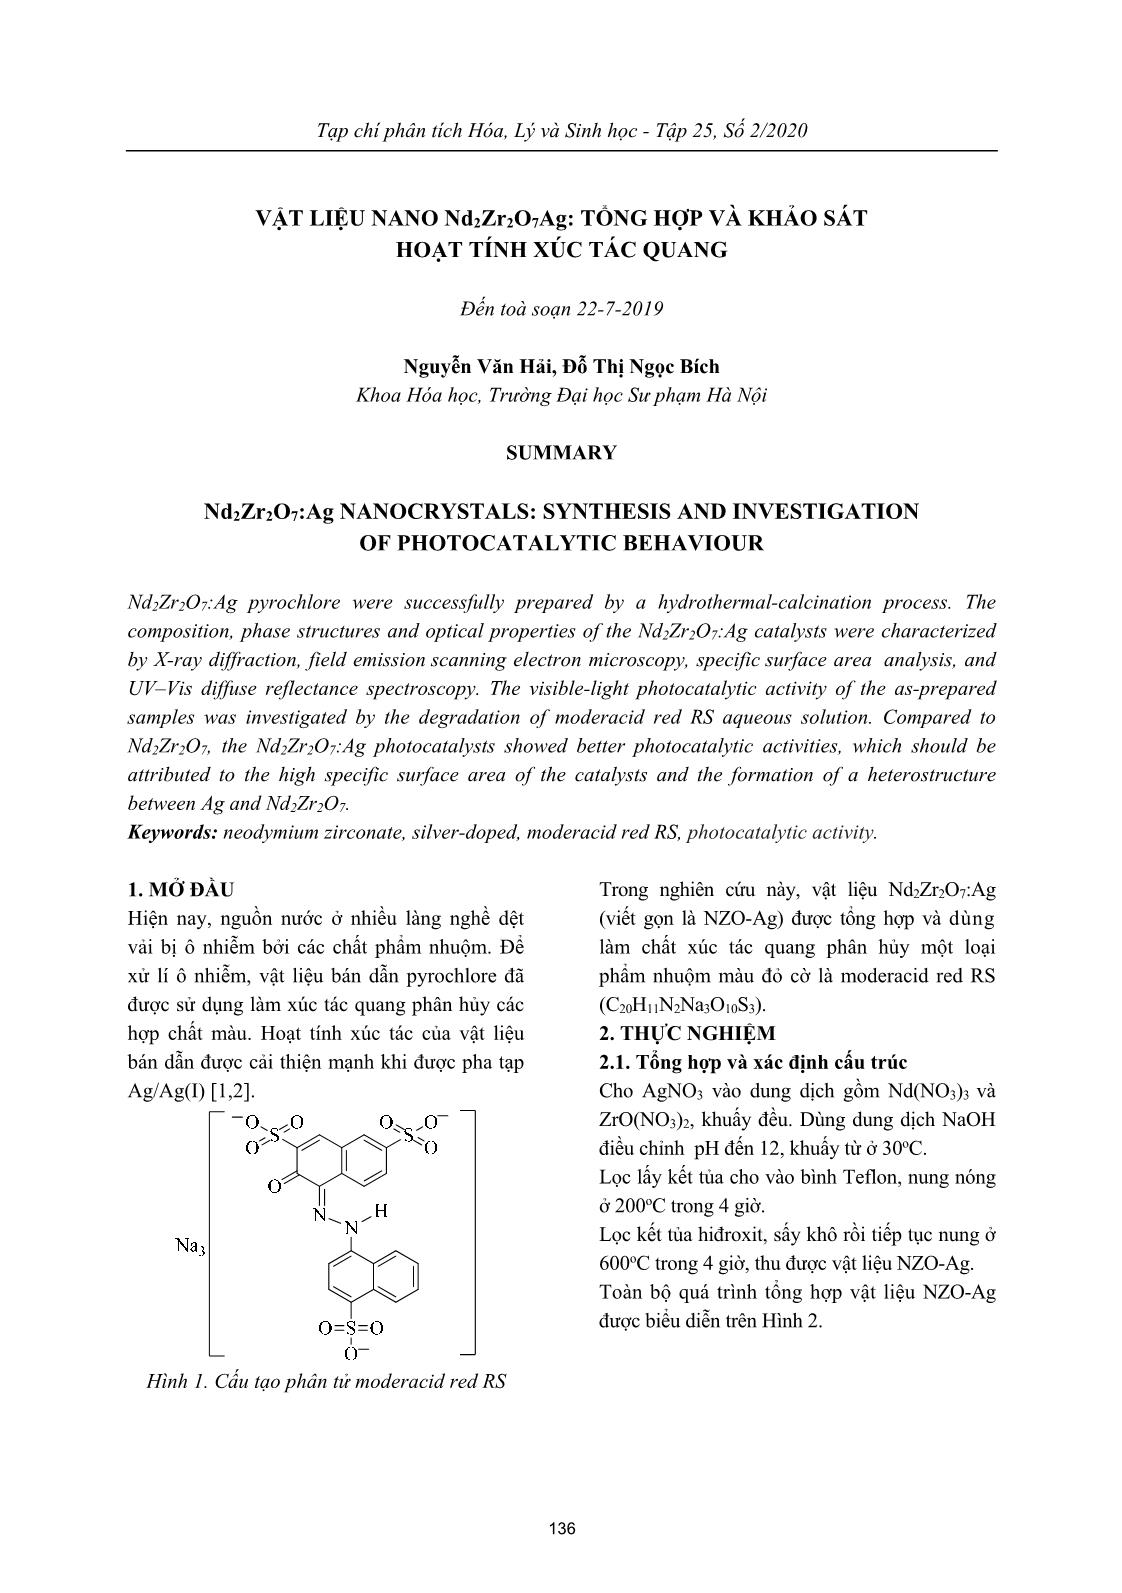 Vật liệu nano Nd₂Zr₂O₇Ag: tổng hợp và khảo sát hoạt tính xúc tác quang trang 1